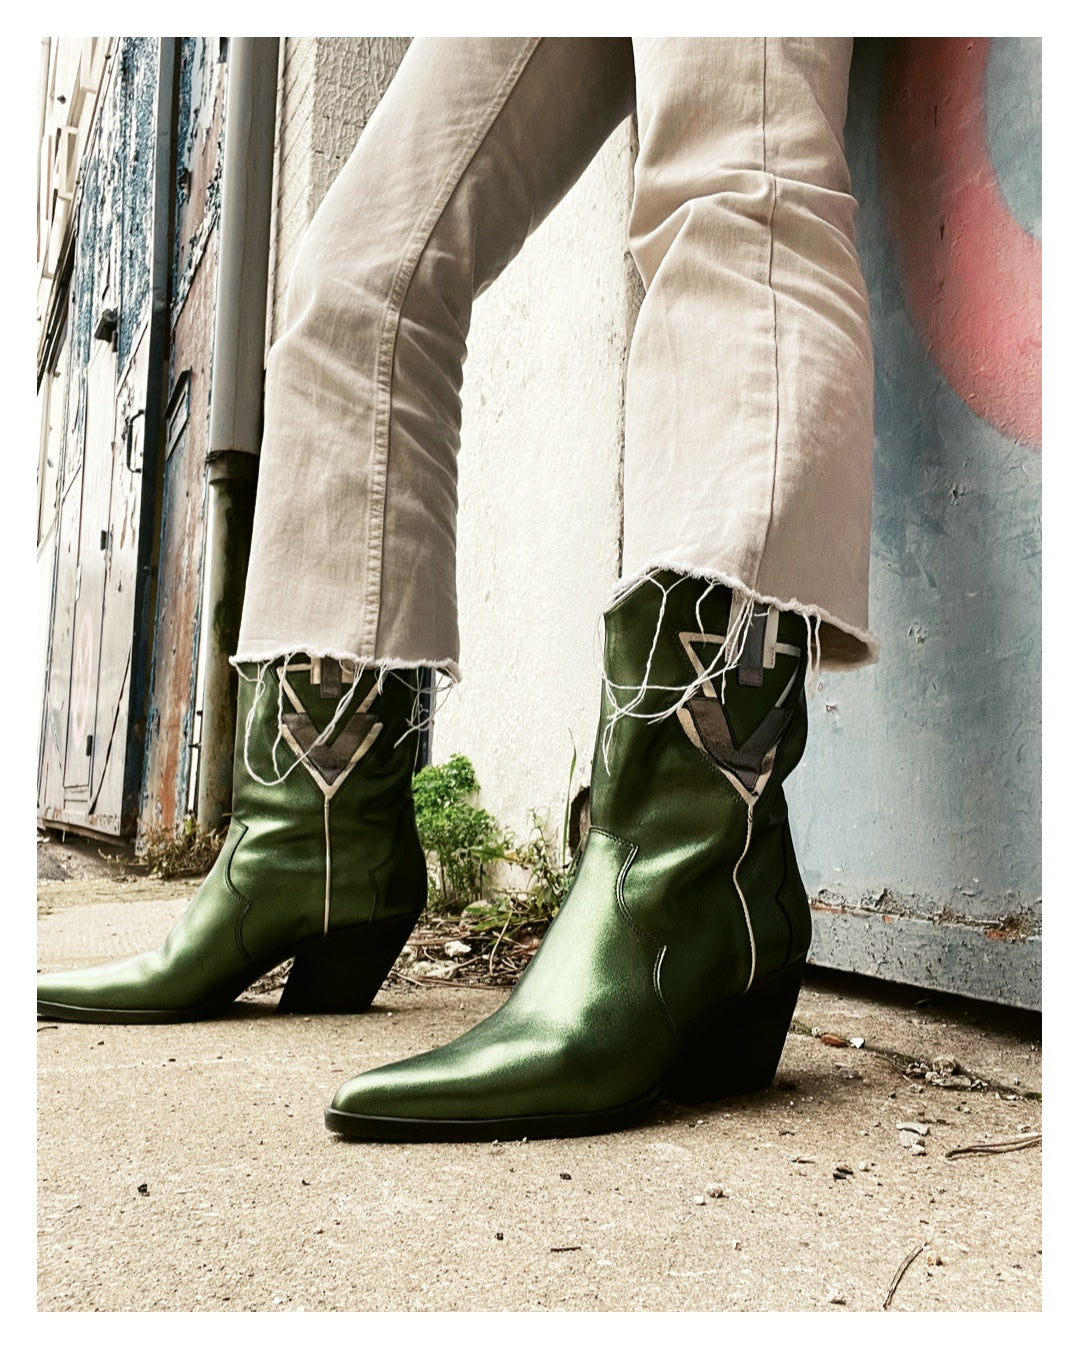 Les bottes santiags femme Mariel modele Green, portées par notre mannequin